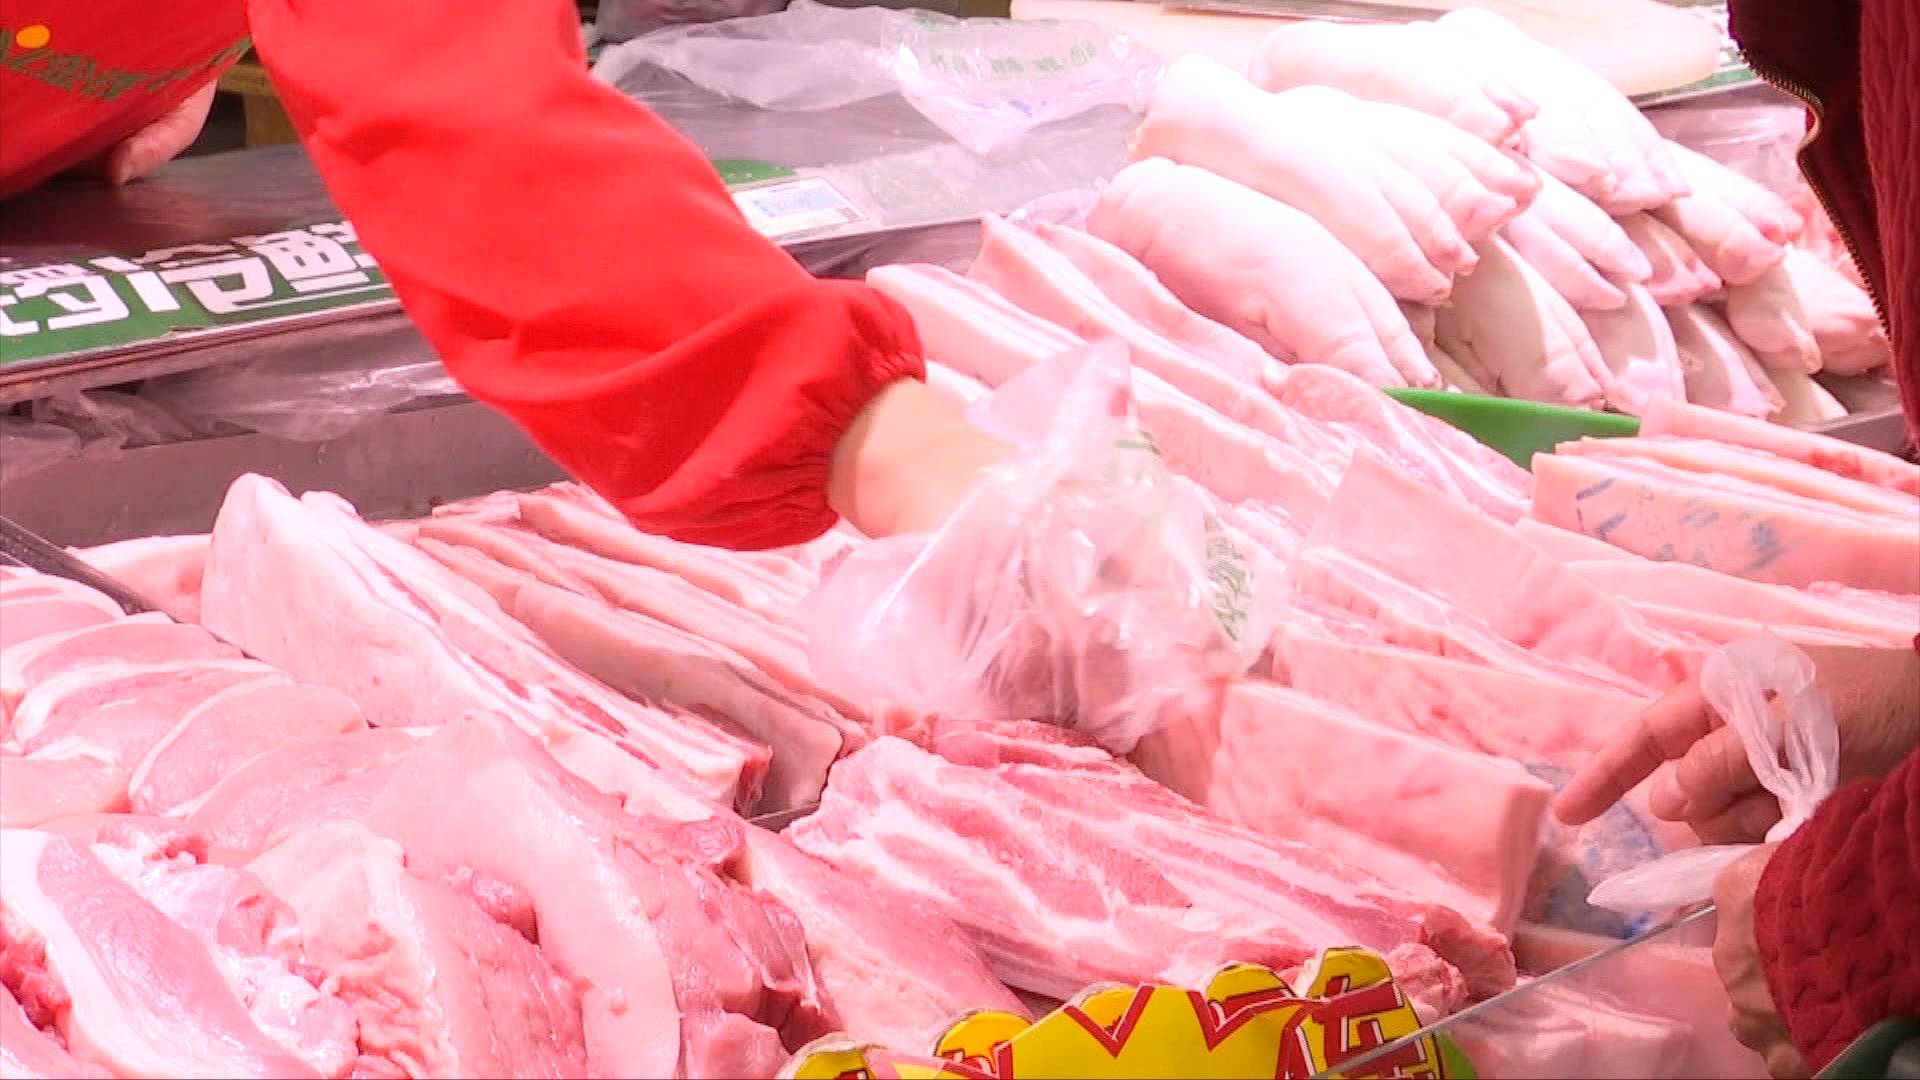 涉案价值20万元 济南三小偷潜入冷库盗窃猪肉被抓获